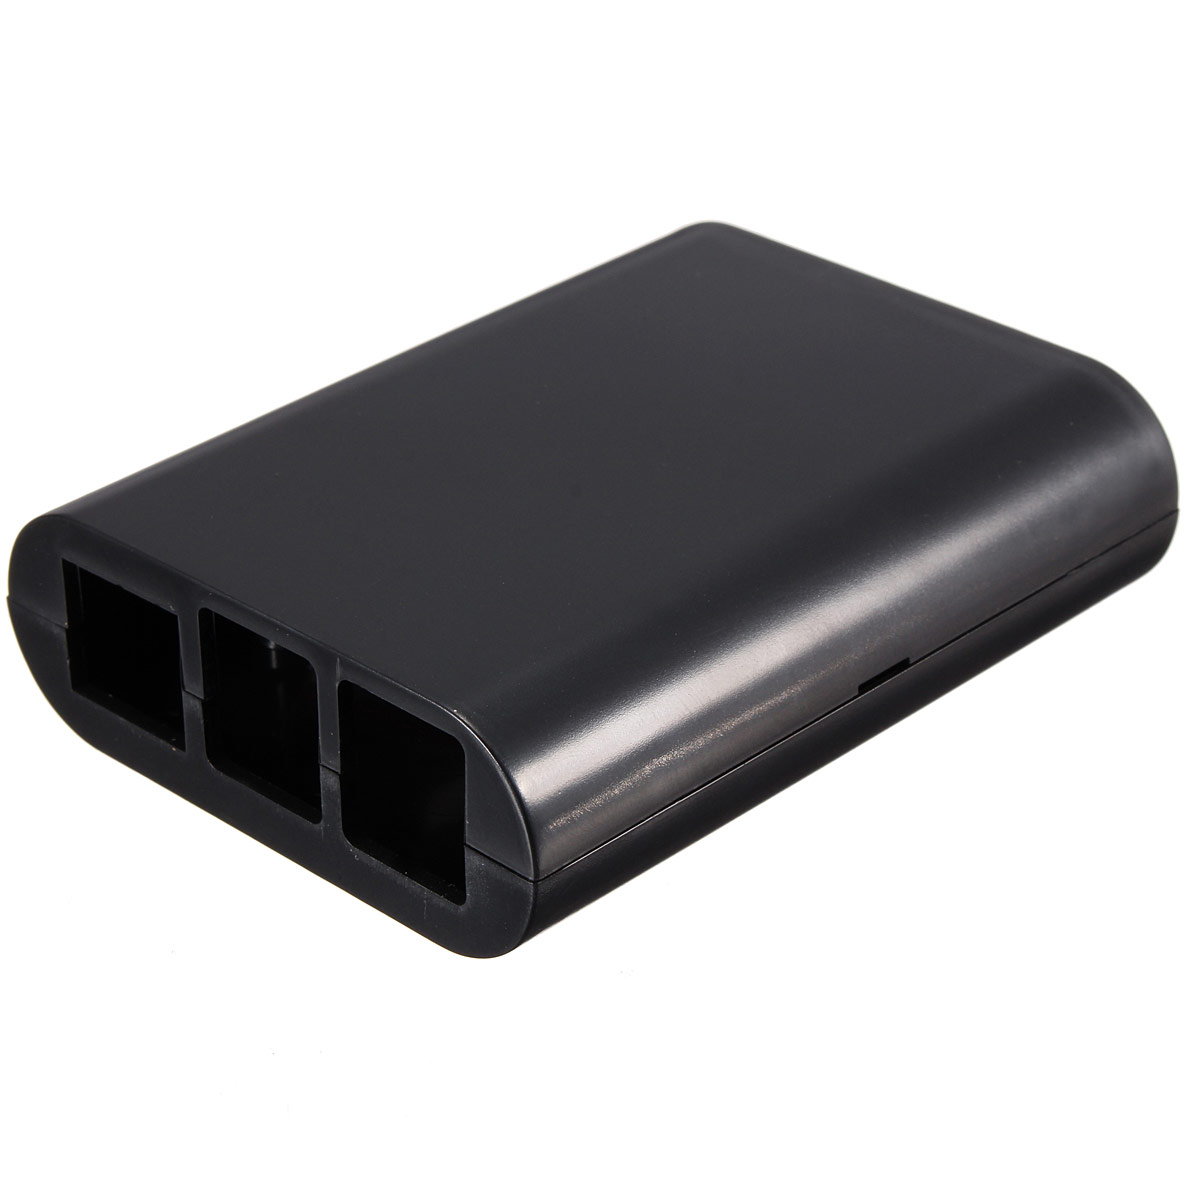 3PCS-Black-Cover-Case-Shell-For-Raspberry-Pi-Model-B-1203606